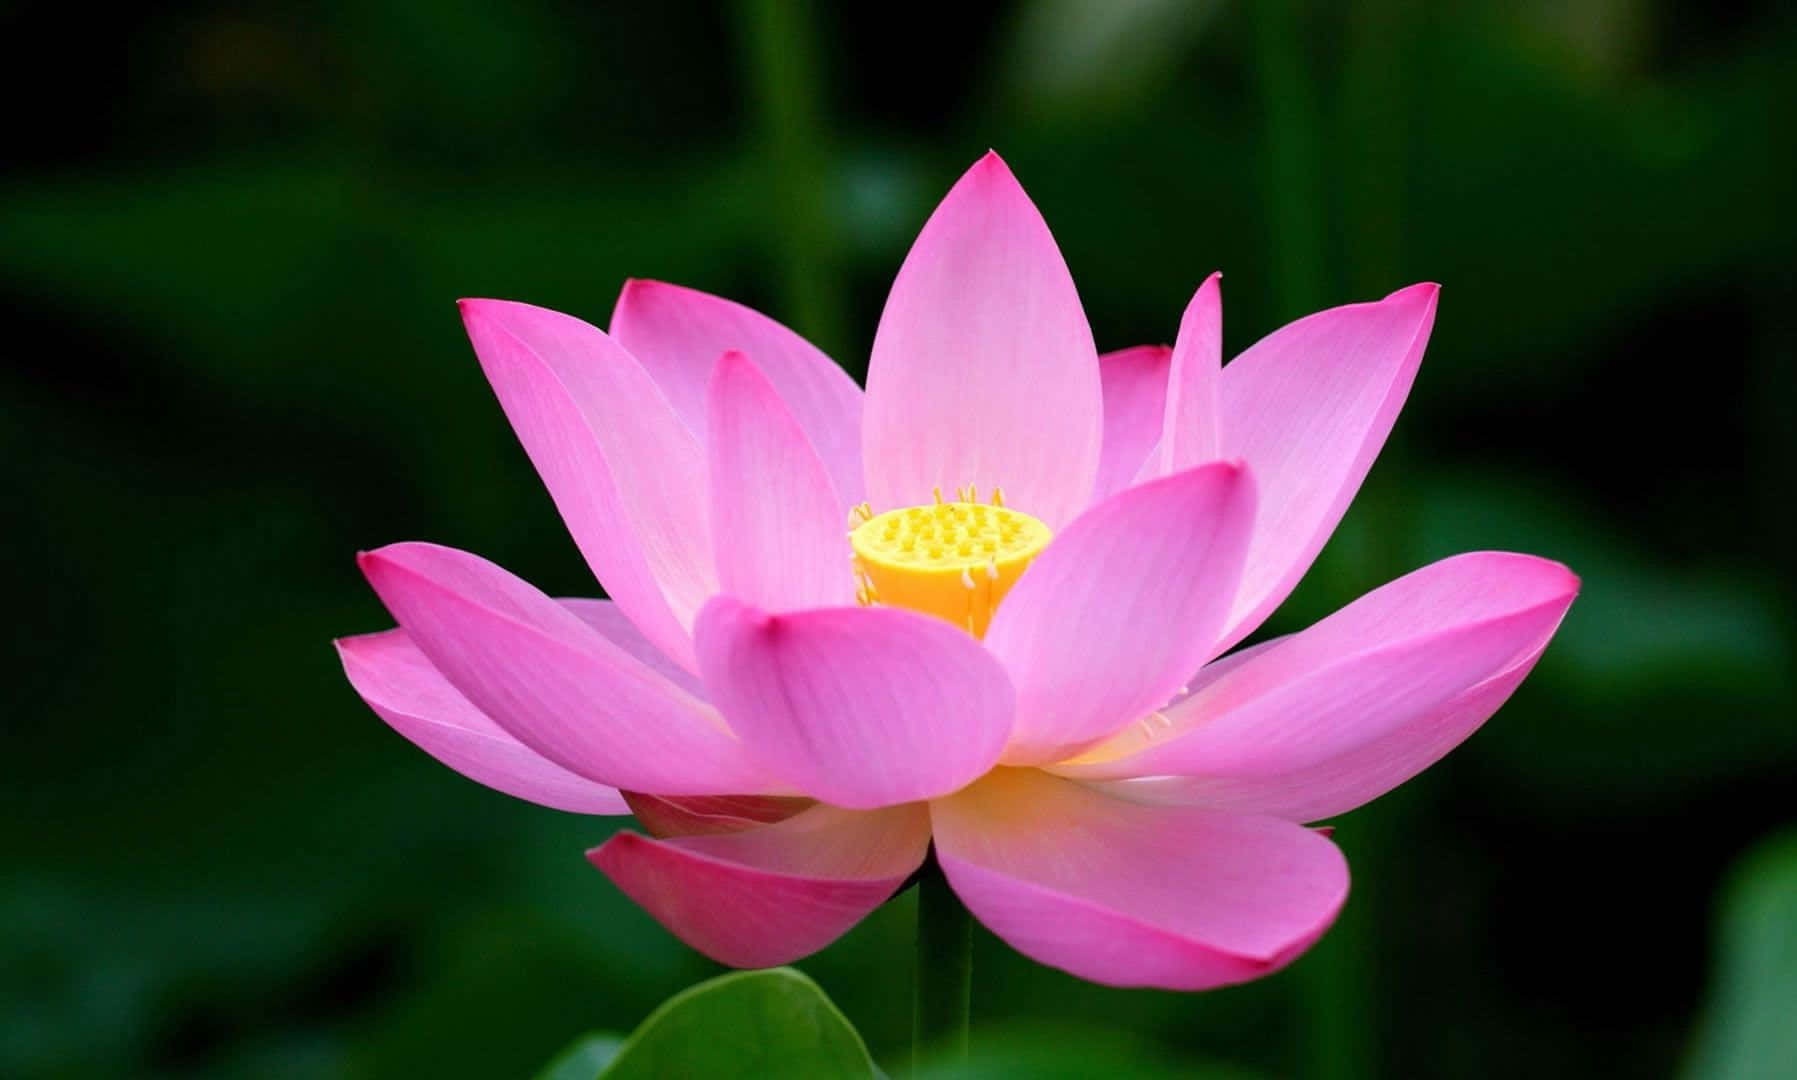 Serene Lotus Flower in Full Bloom